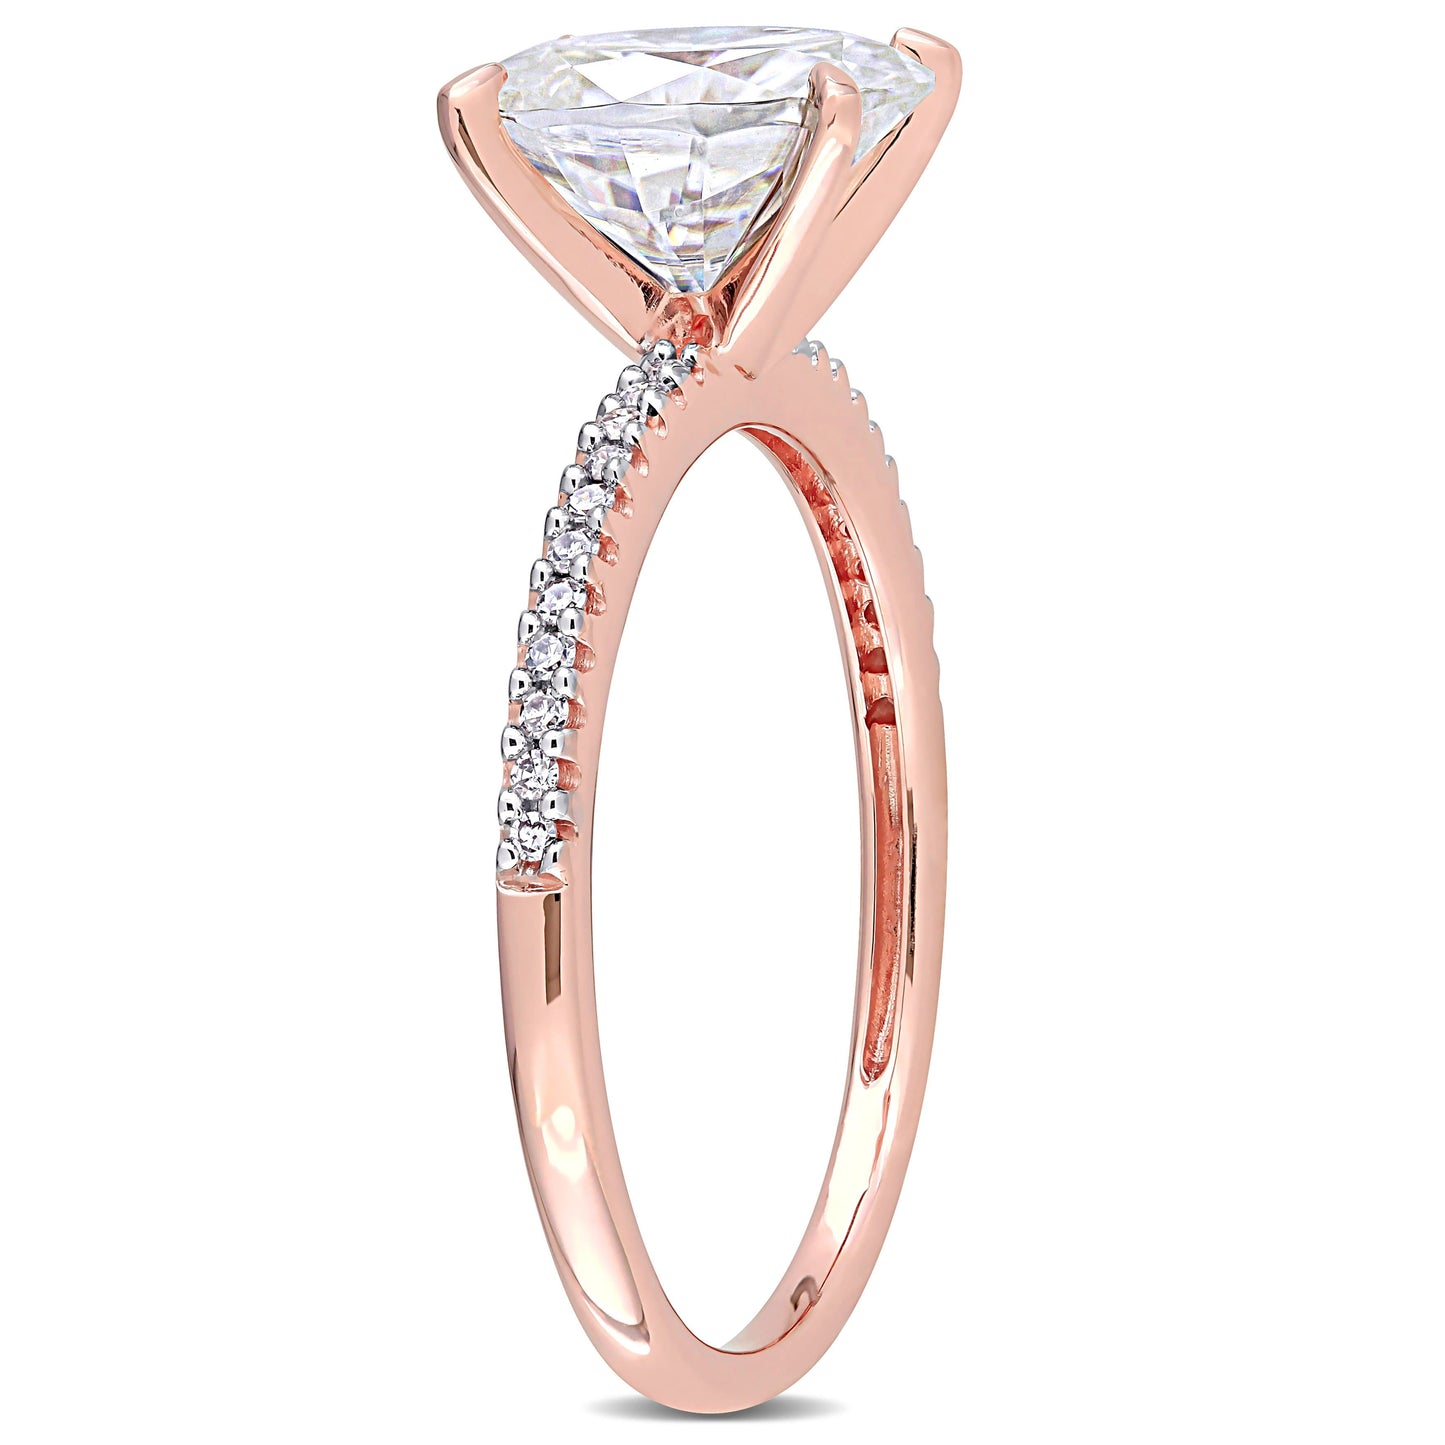 Oval Cut Moissanite & Diamond Ring in 14k Rose Gold